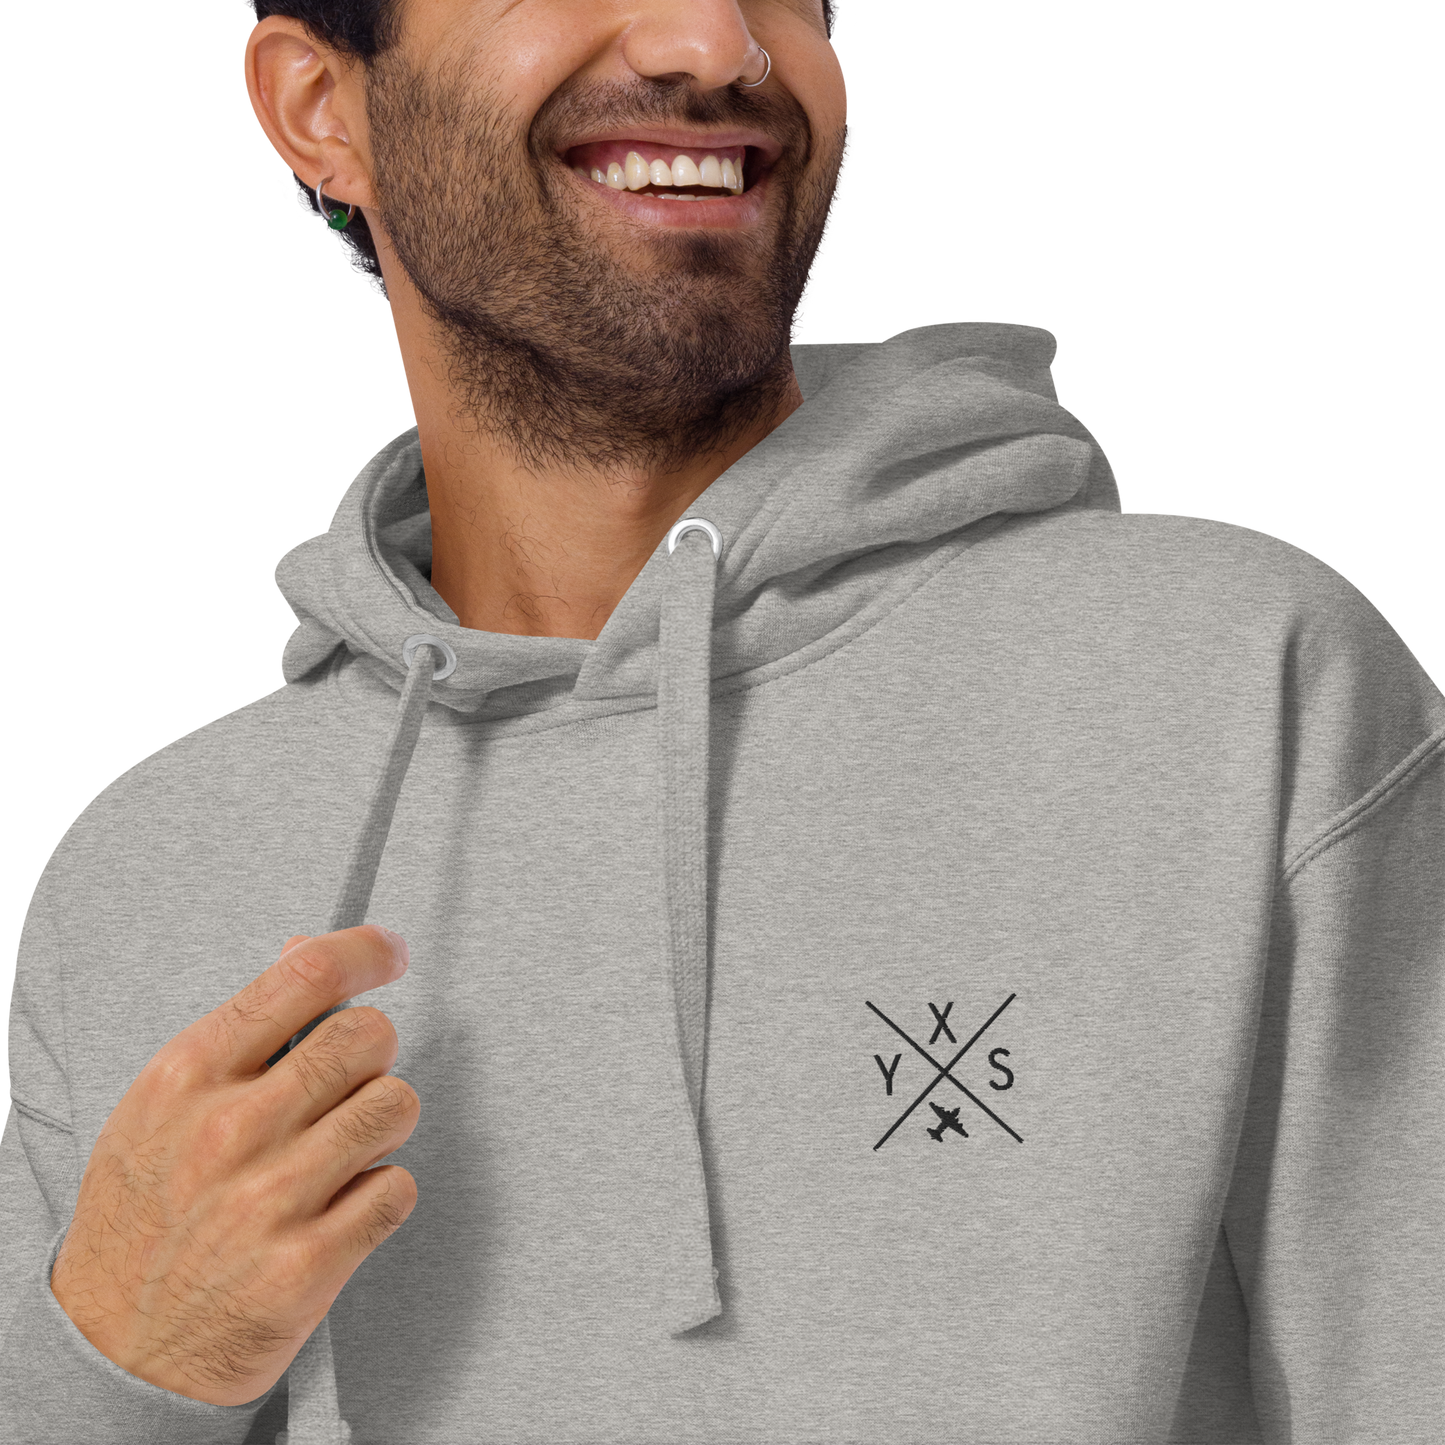 Crossed-X Premium Hoodie • YXS Prince George • YHM Designs - Image 15